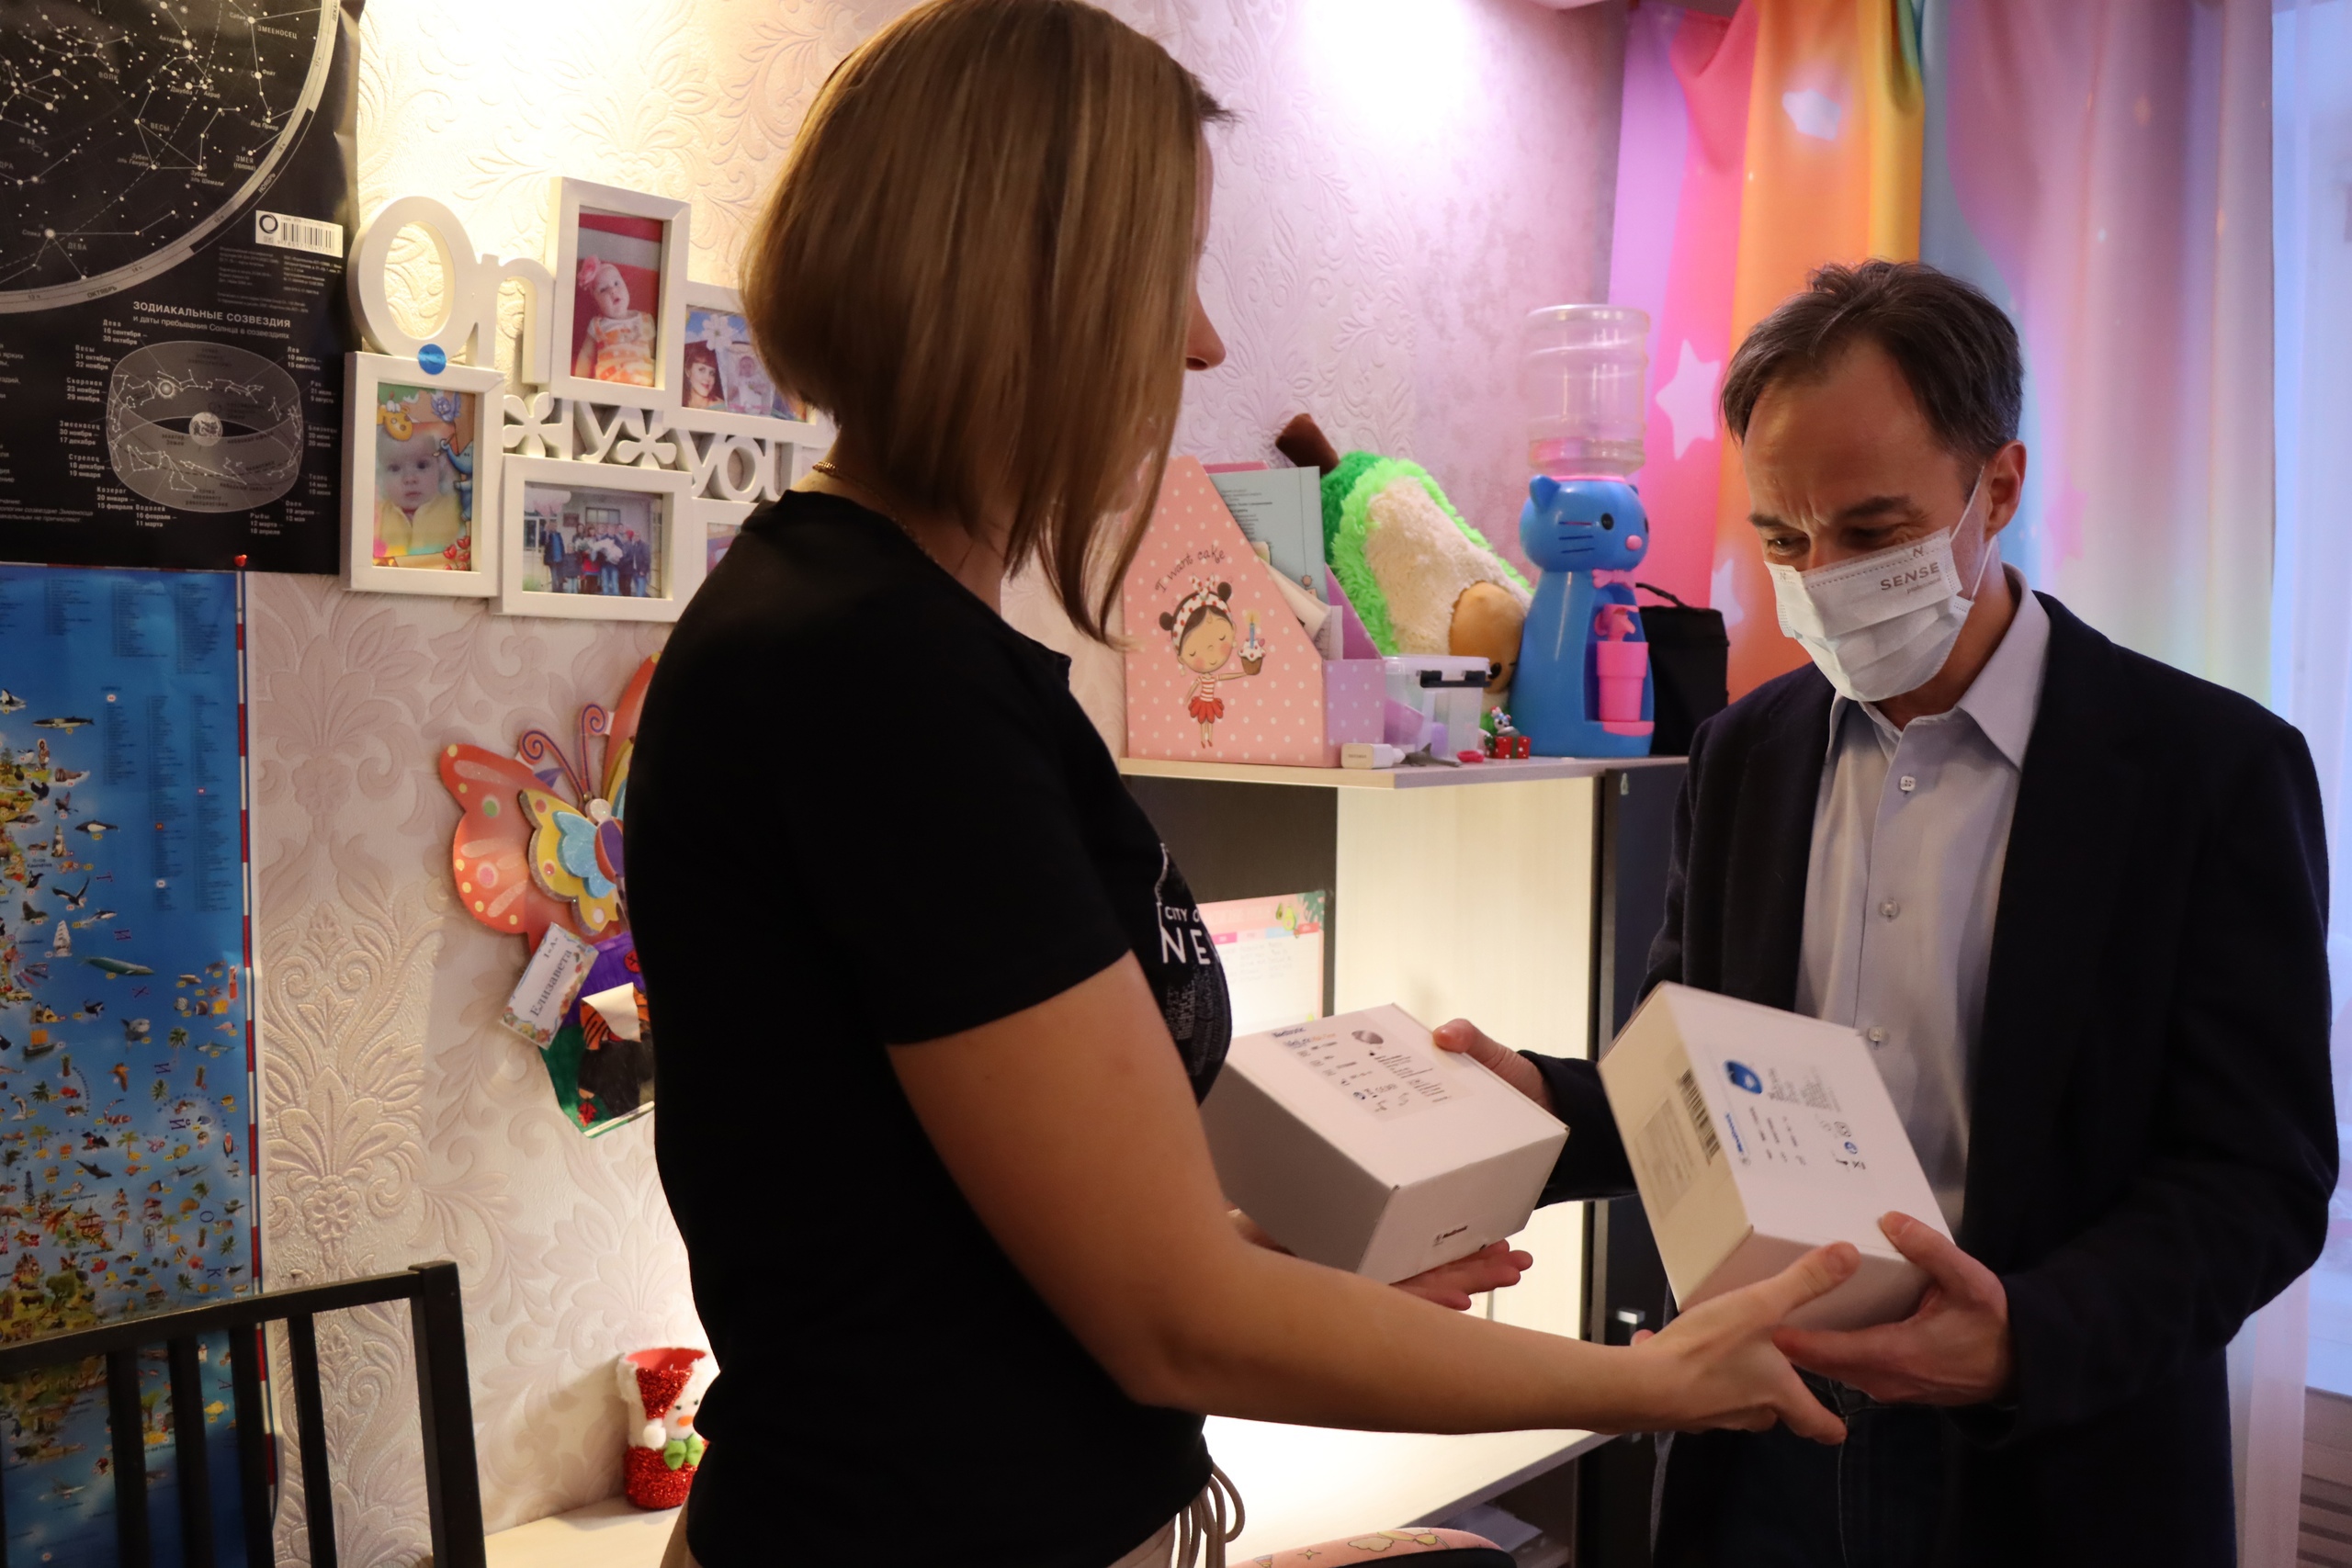 В Карелии депутат передал аппарат для мониторинга уровня глюкозы семье с ребенком-диабетиком